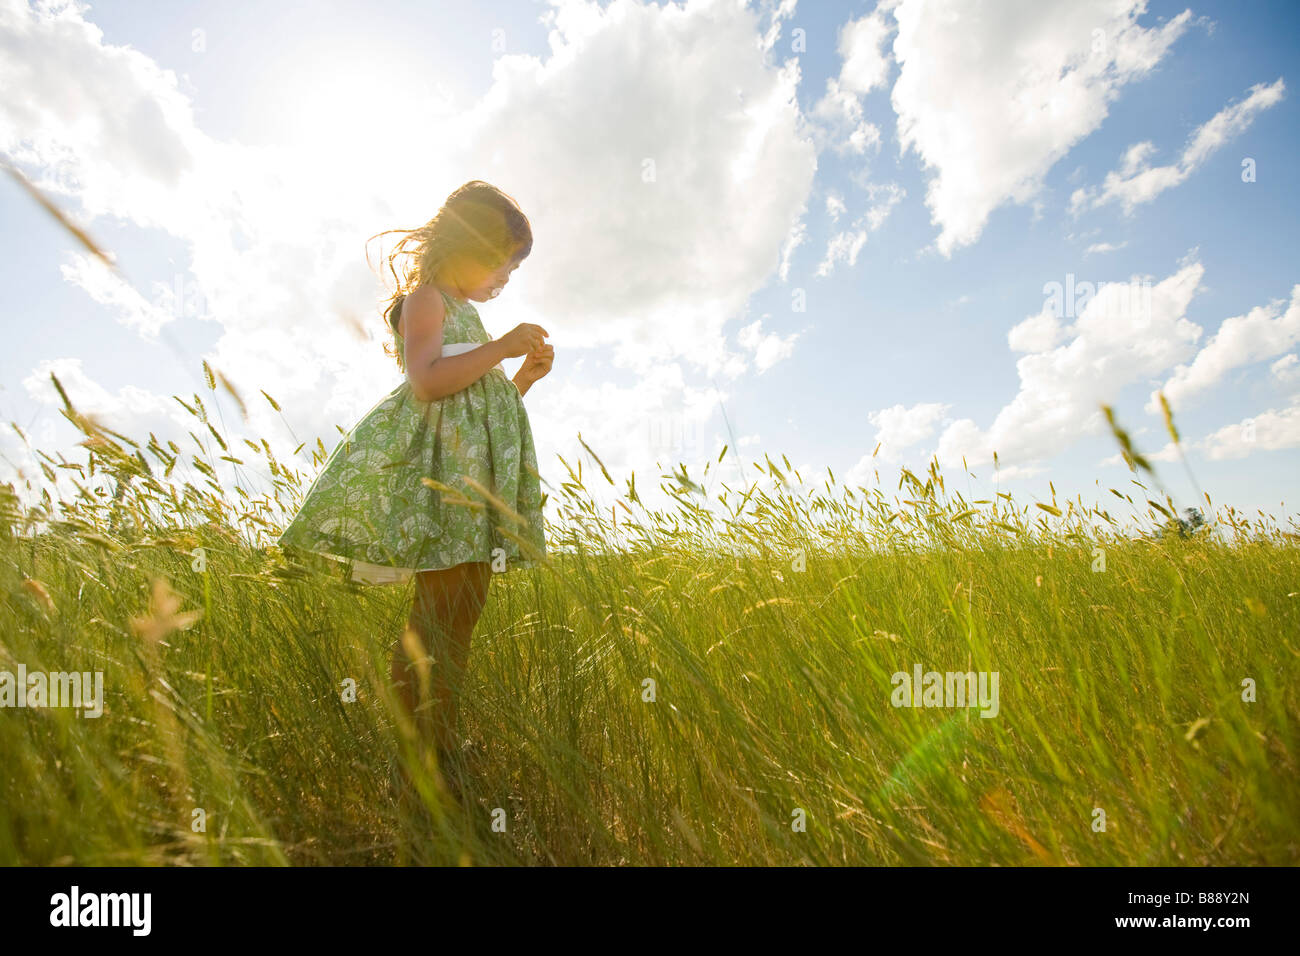 Girl in a Grassy Field in North Dakota Stock Photo